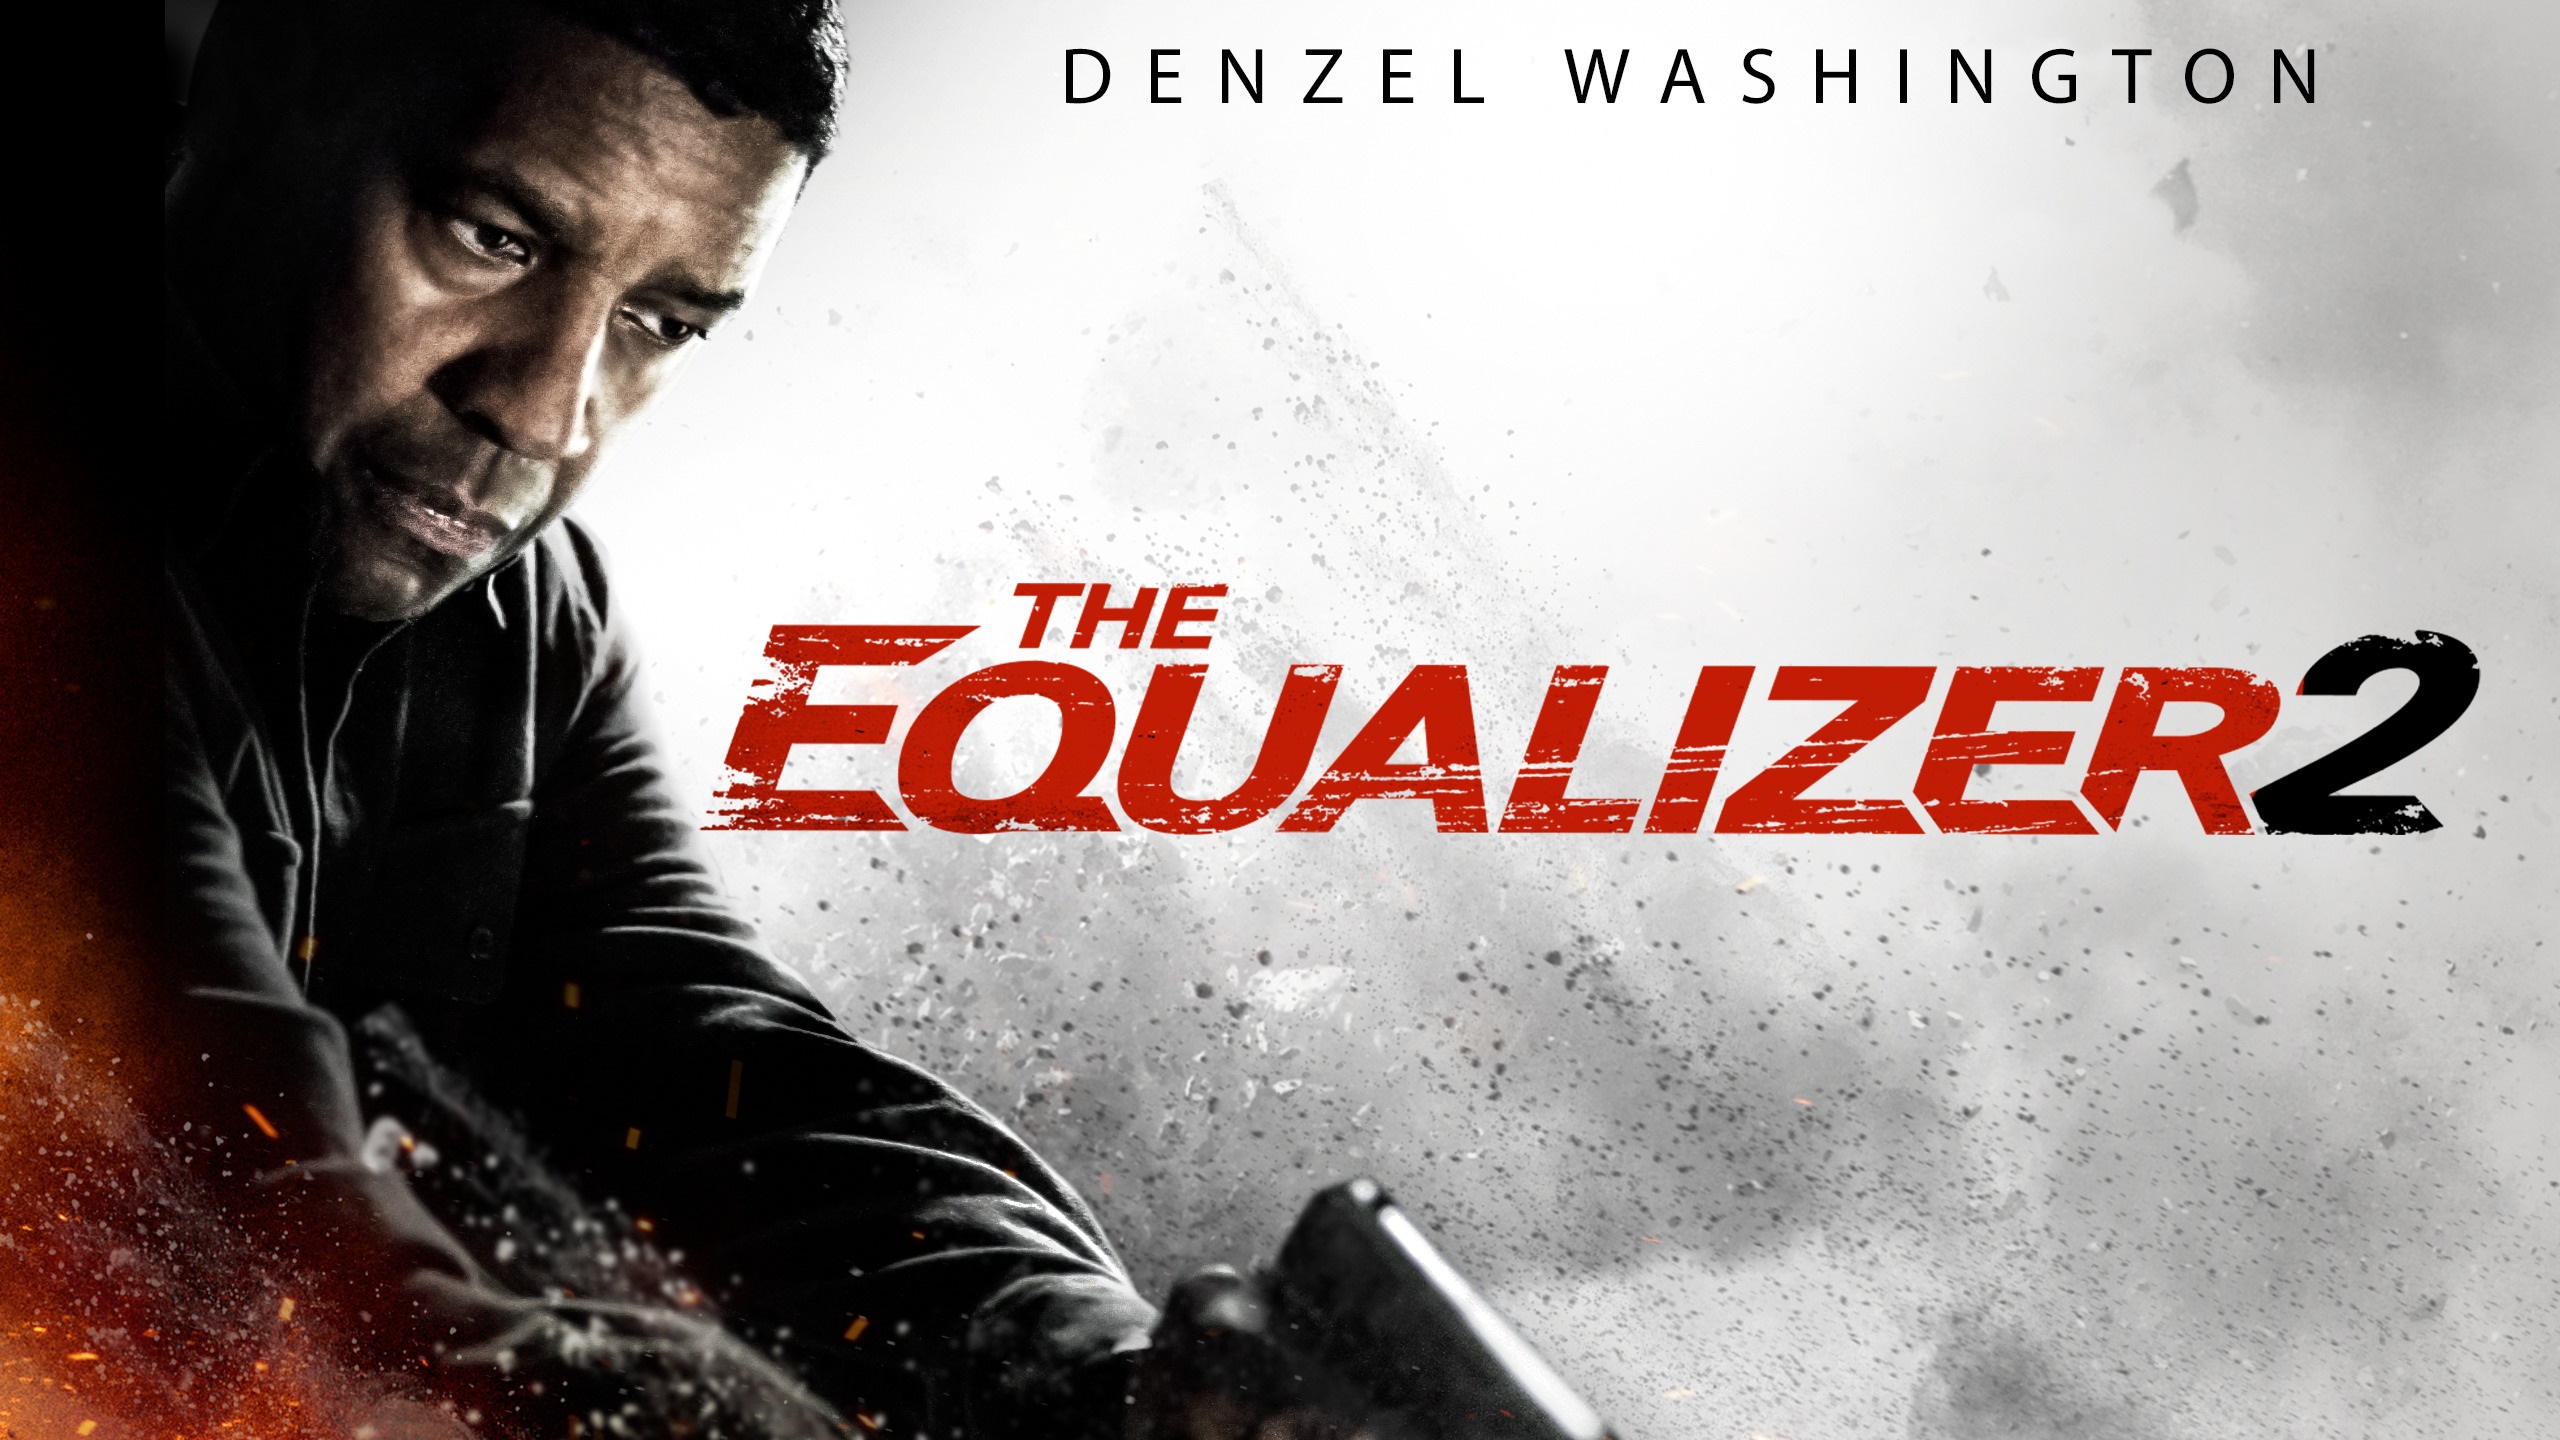 Великий уравнитель узбек. The Equalizer 2. DVD the Equalizer 2. The Equalizer 3 Blu-ray. The Equalizer 2 Blu-ray.